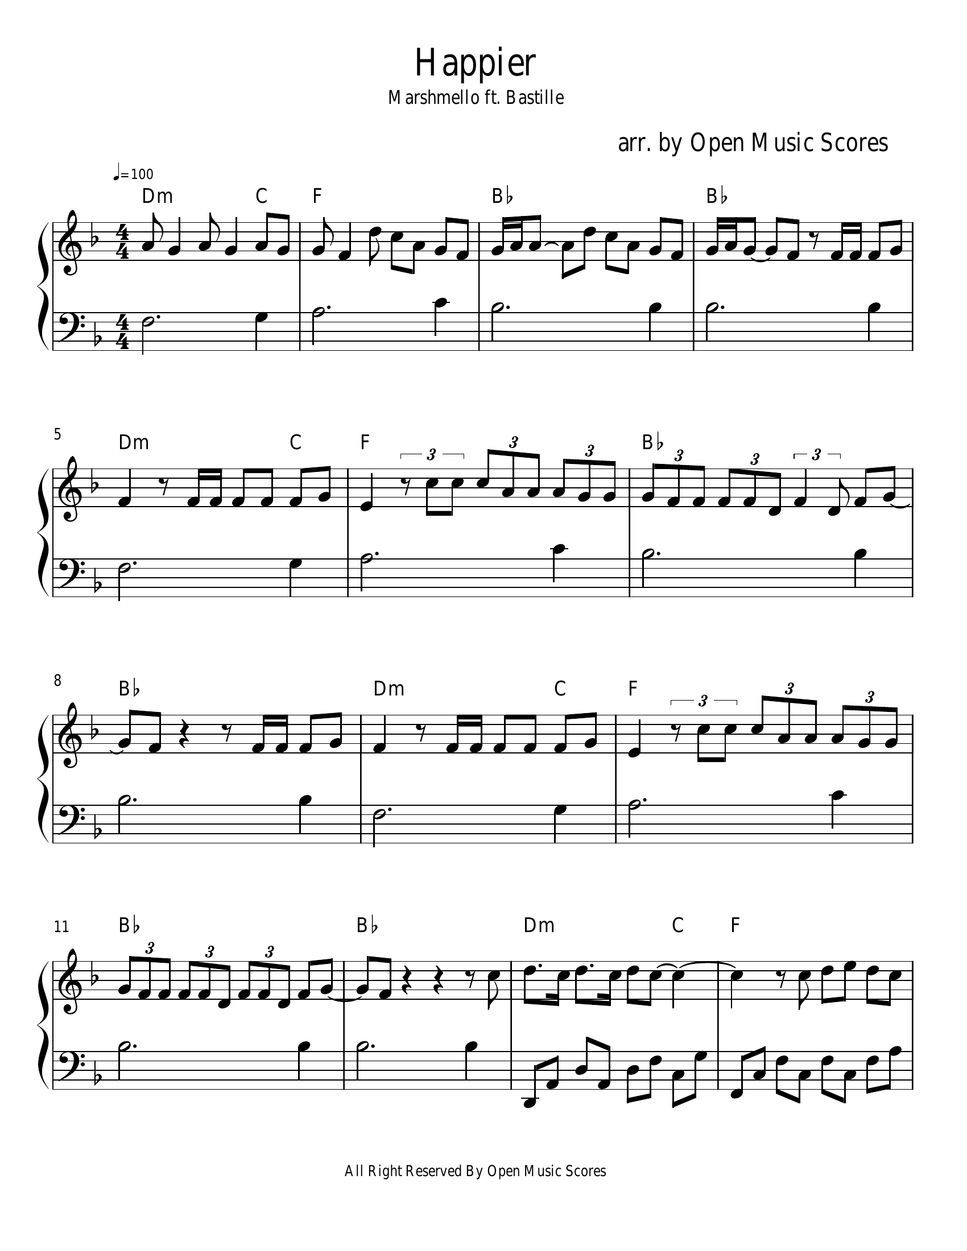 Giro de vuelta Múltiple Seducir Marshmellow ft Bastille - Happier( Easy Piano) Sheet by Open Music Scores